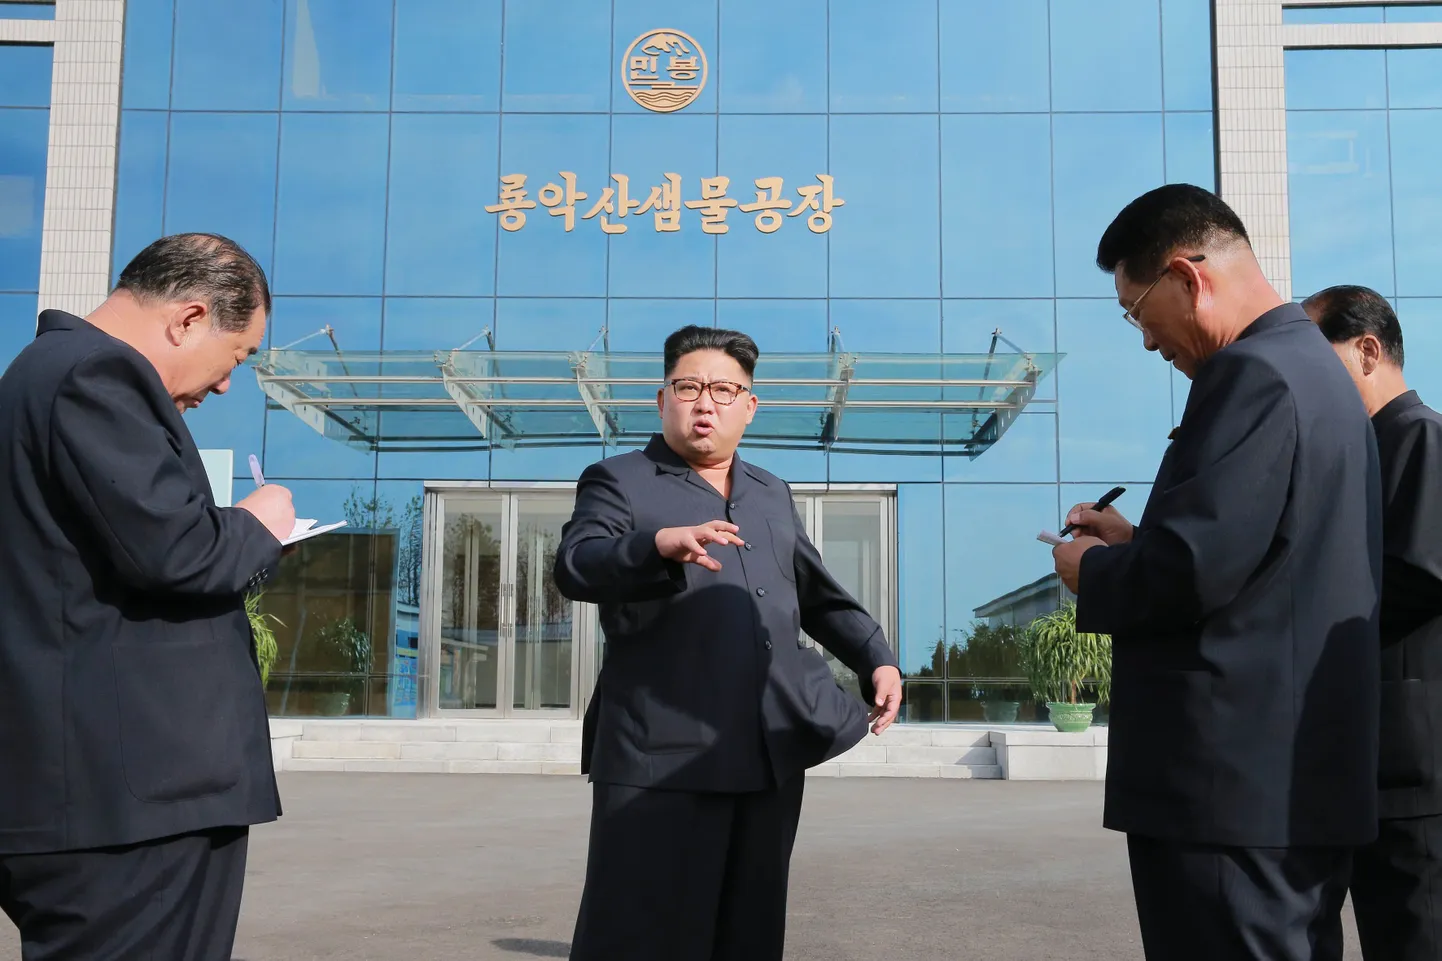 Põhja-Korea liider Kim Jong-Un juhiseid jagamas.